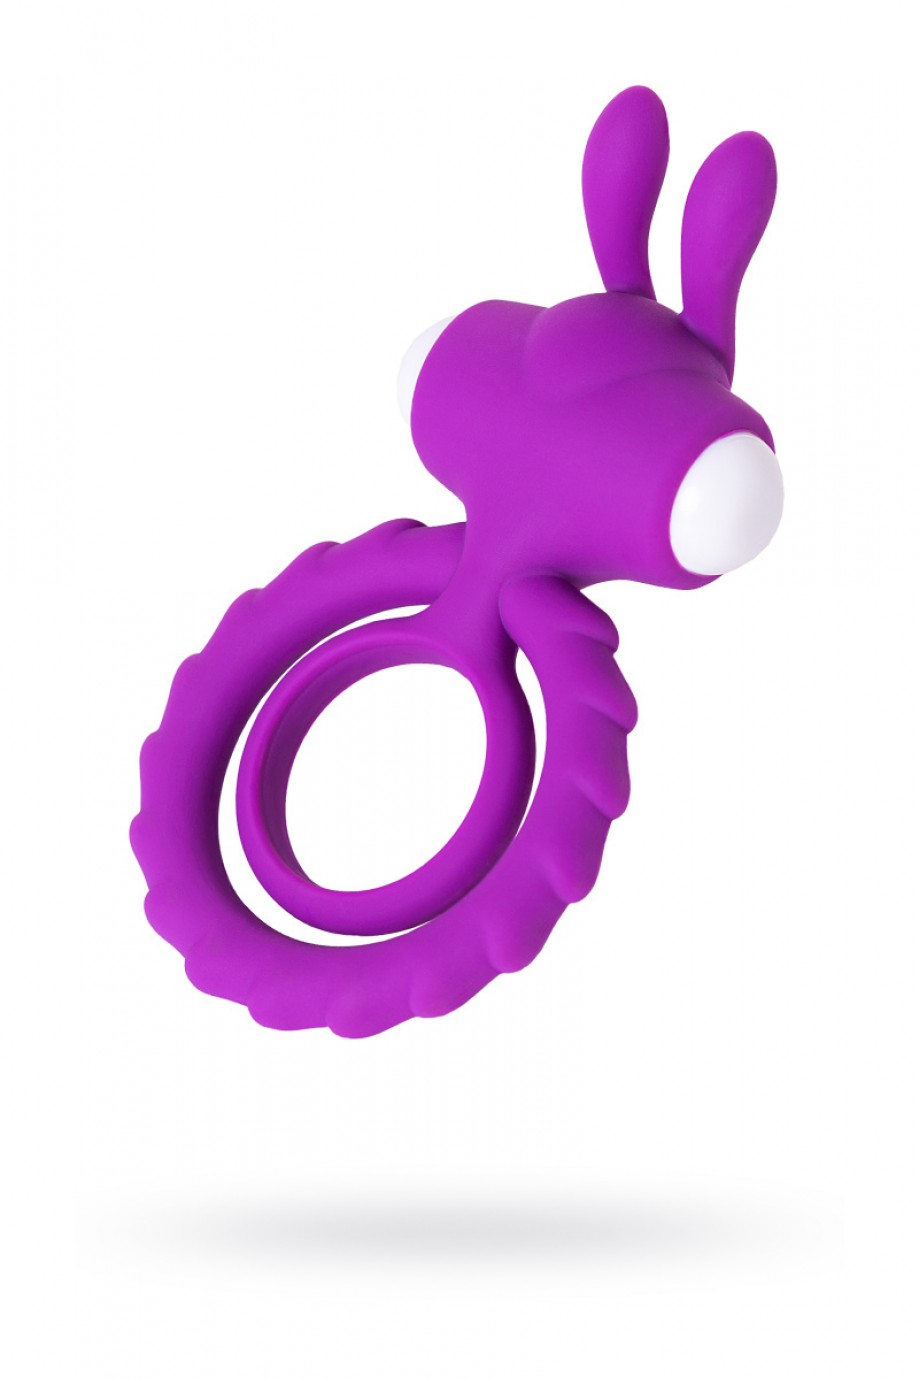 Виброкольцо JOS GOOD BUNNY, фиолетовый